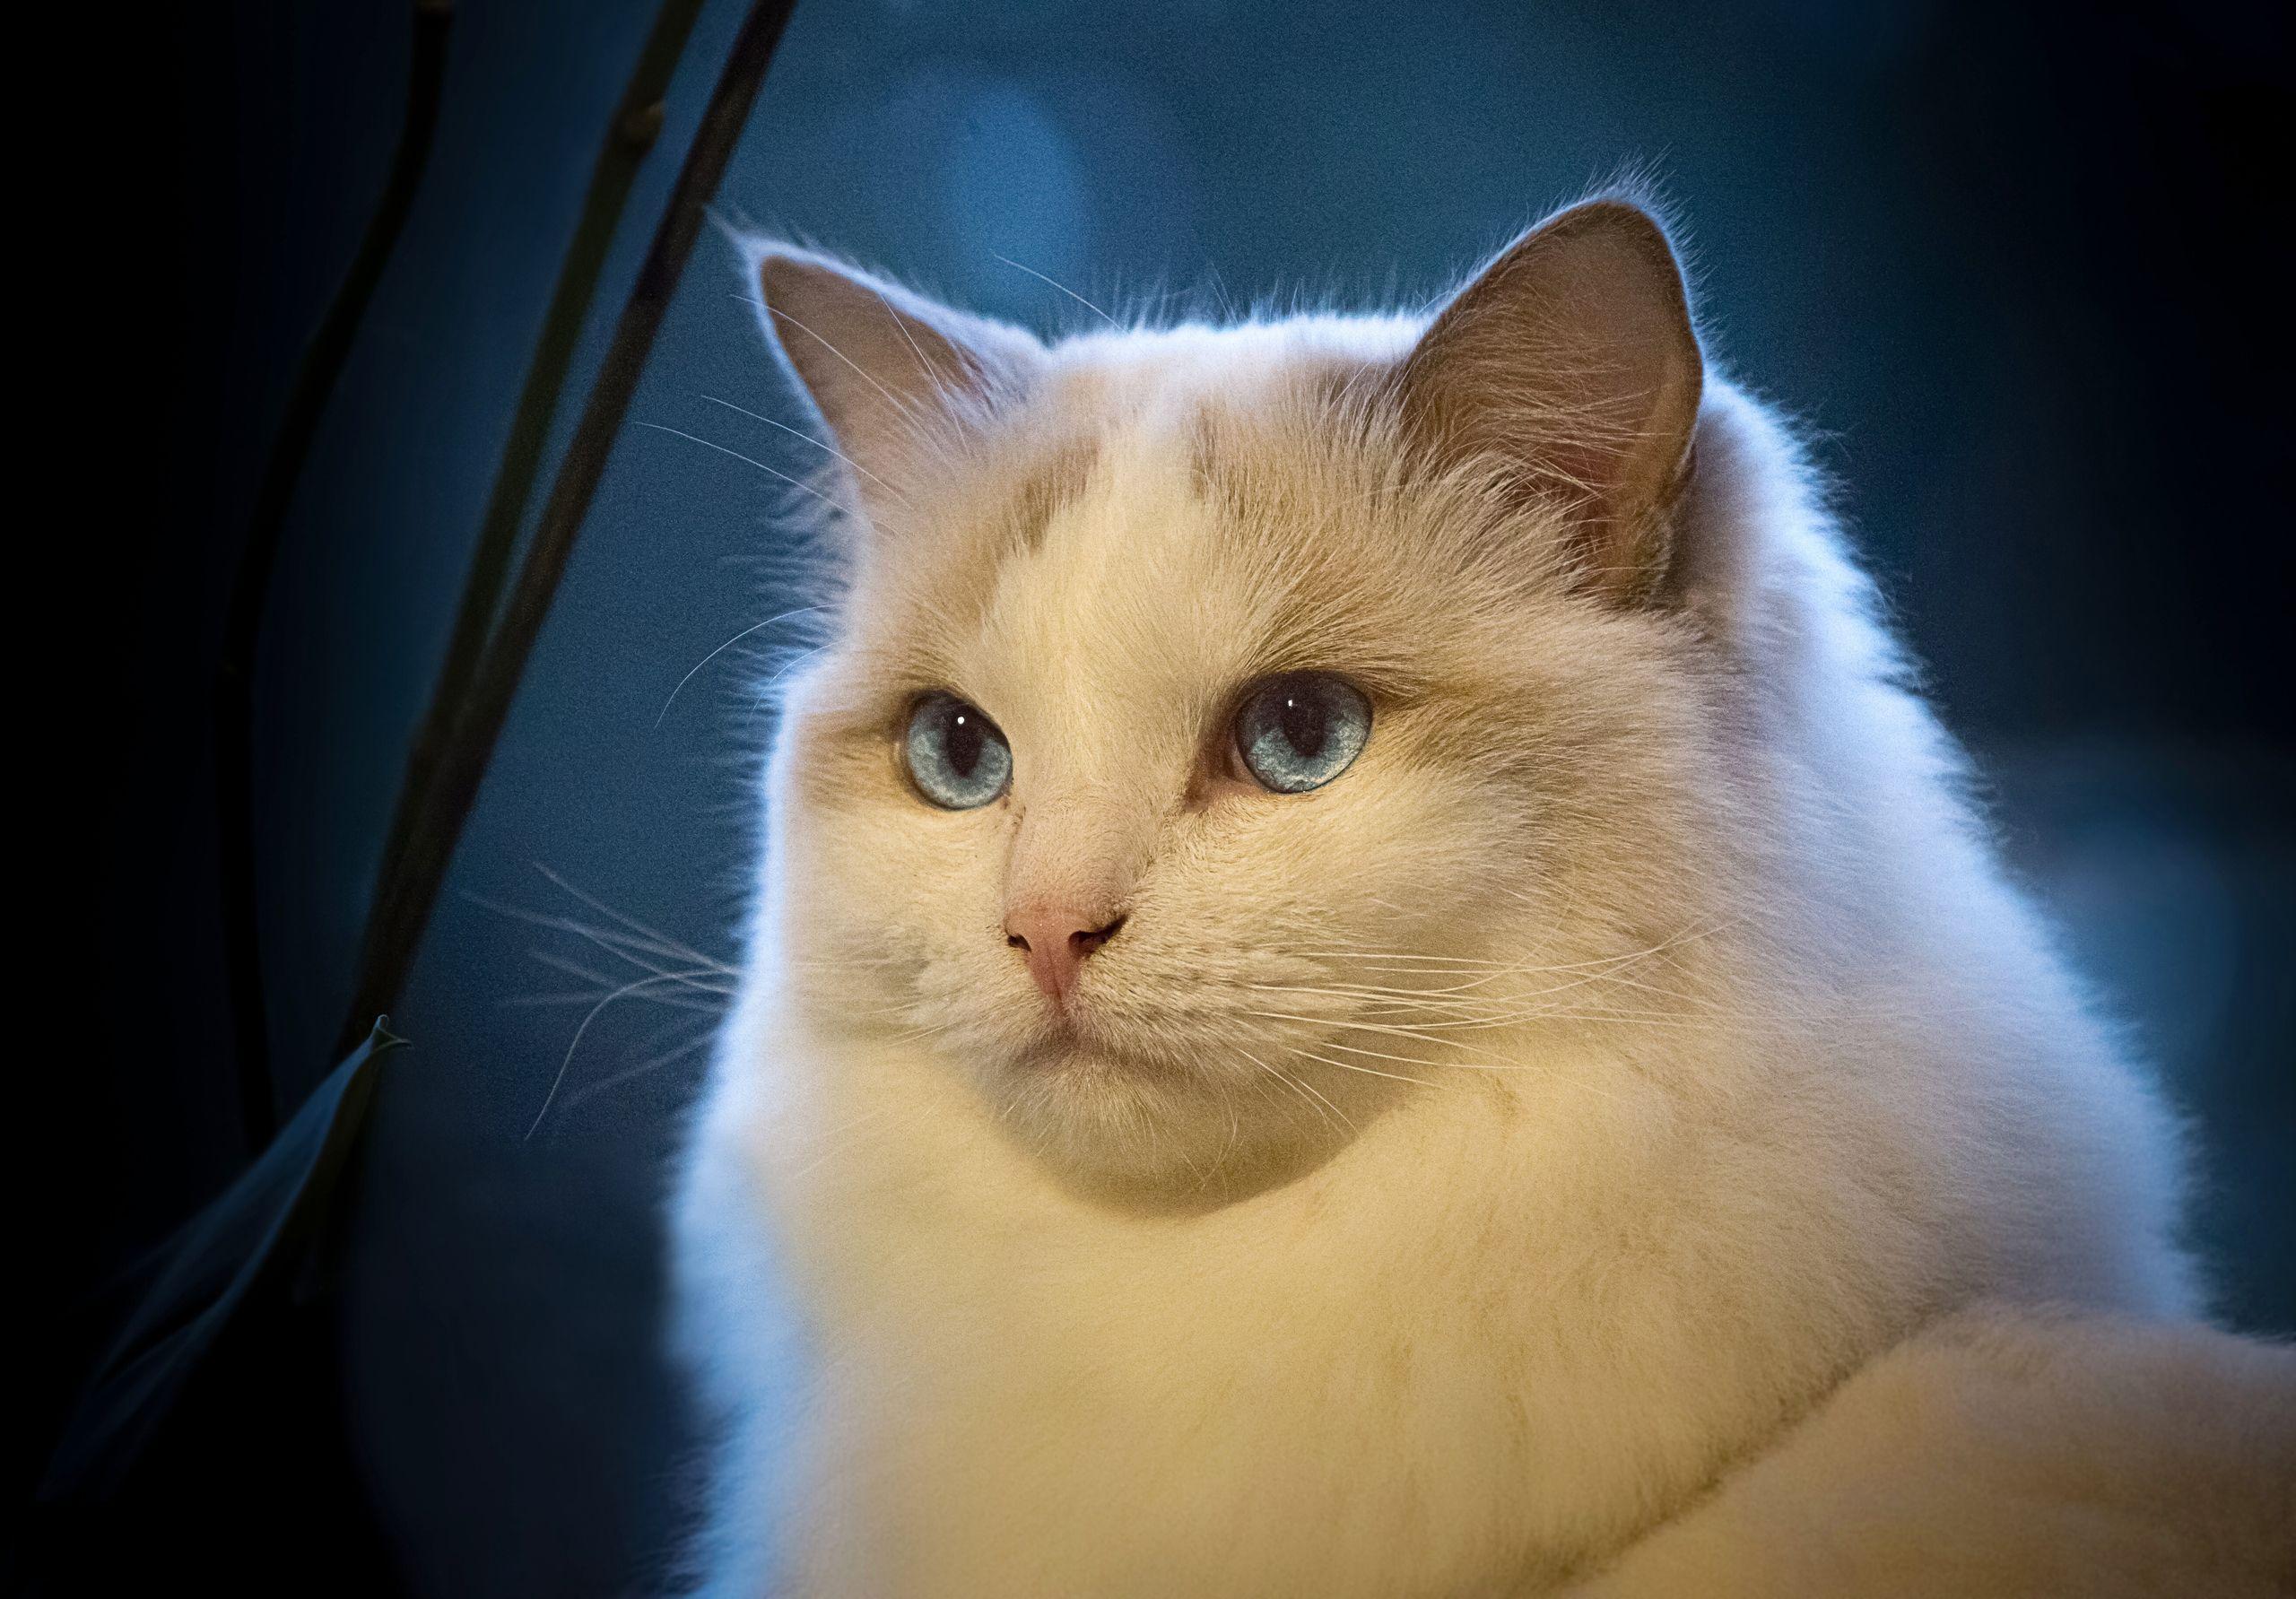 Ultra HD Wallpaper, flower 4K. portrait of Ragdoll cat on blue